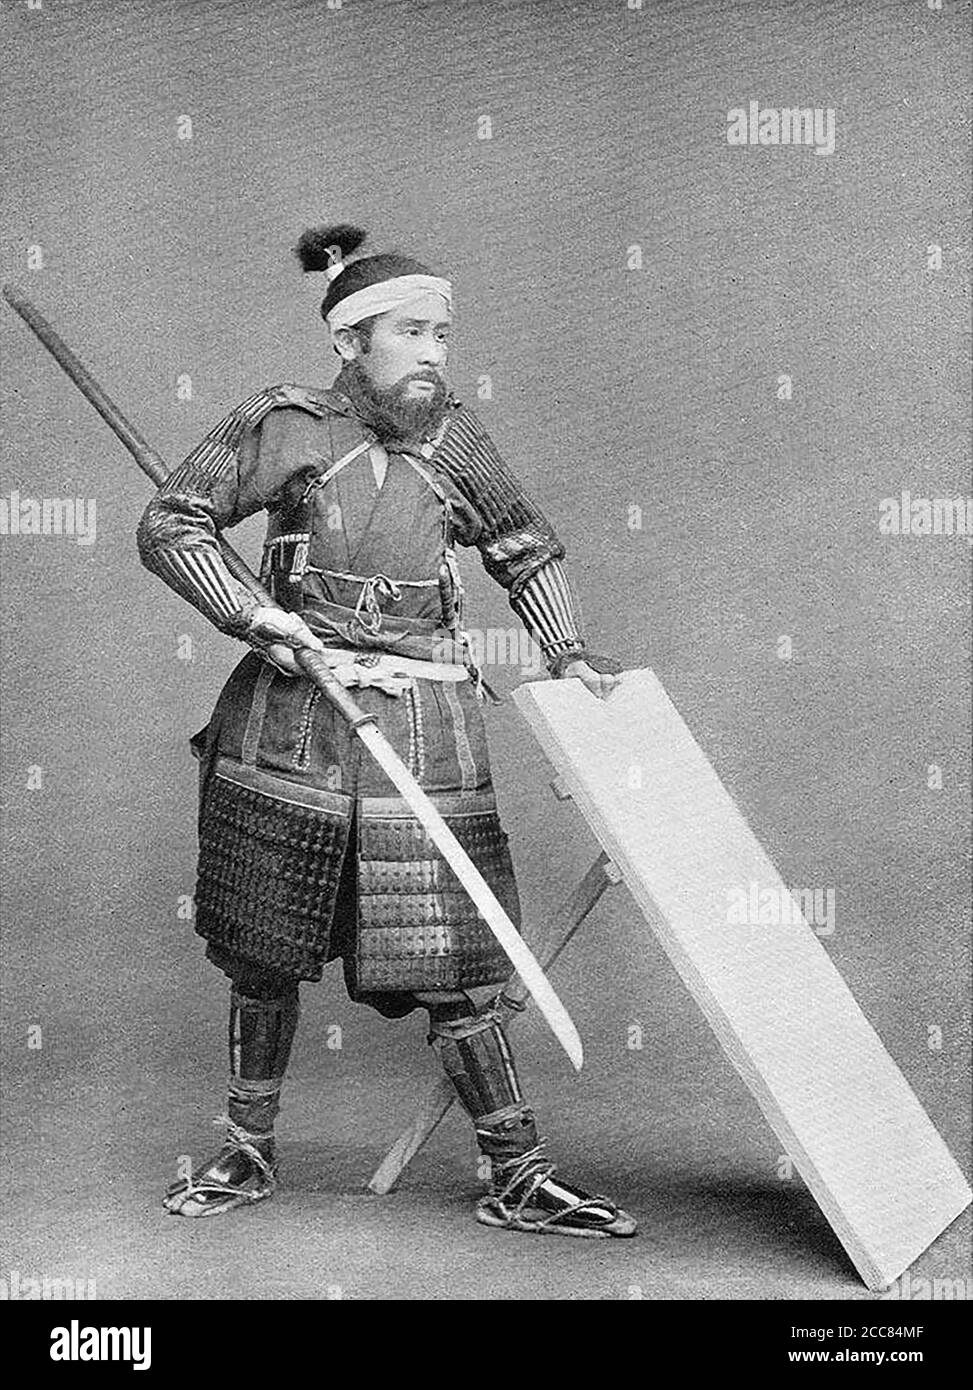 Japan: 'Ein Krieger mit Schild'. Chemigraph aus der Serie 'Military Costumes in Old Japan' von Kazumasa Ogawa (1860-1929), 1893, Tokio. Ogawa Kazumasa, auch bekannt als Ogawa Kazuma oder Ogawa Isshin, war ein japanischer Fotograf, Chemigraph, Drucker und Verleger der Meiji-Ära. Er war ein Pionier im photomechanischen Druck und der Fotografie und wurde in den Samurai-Clan von Matsudaira geboren, wo er im Alter von 15 Jahren Englisch und Fotografie studierte. Stockfoto